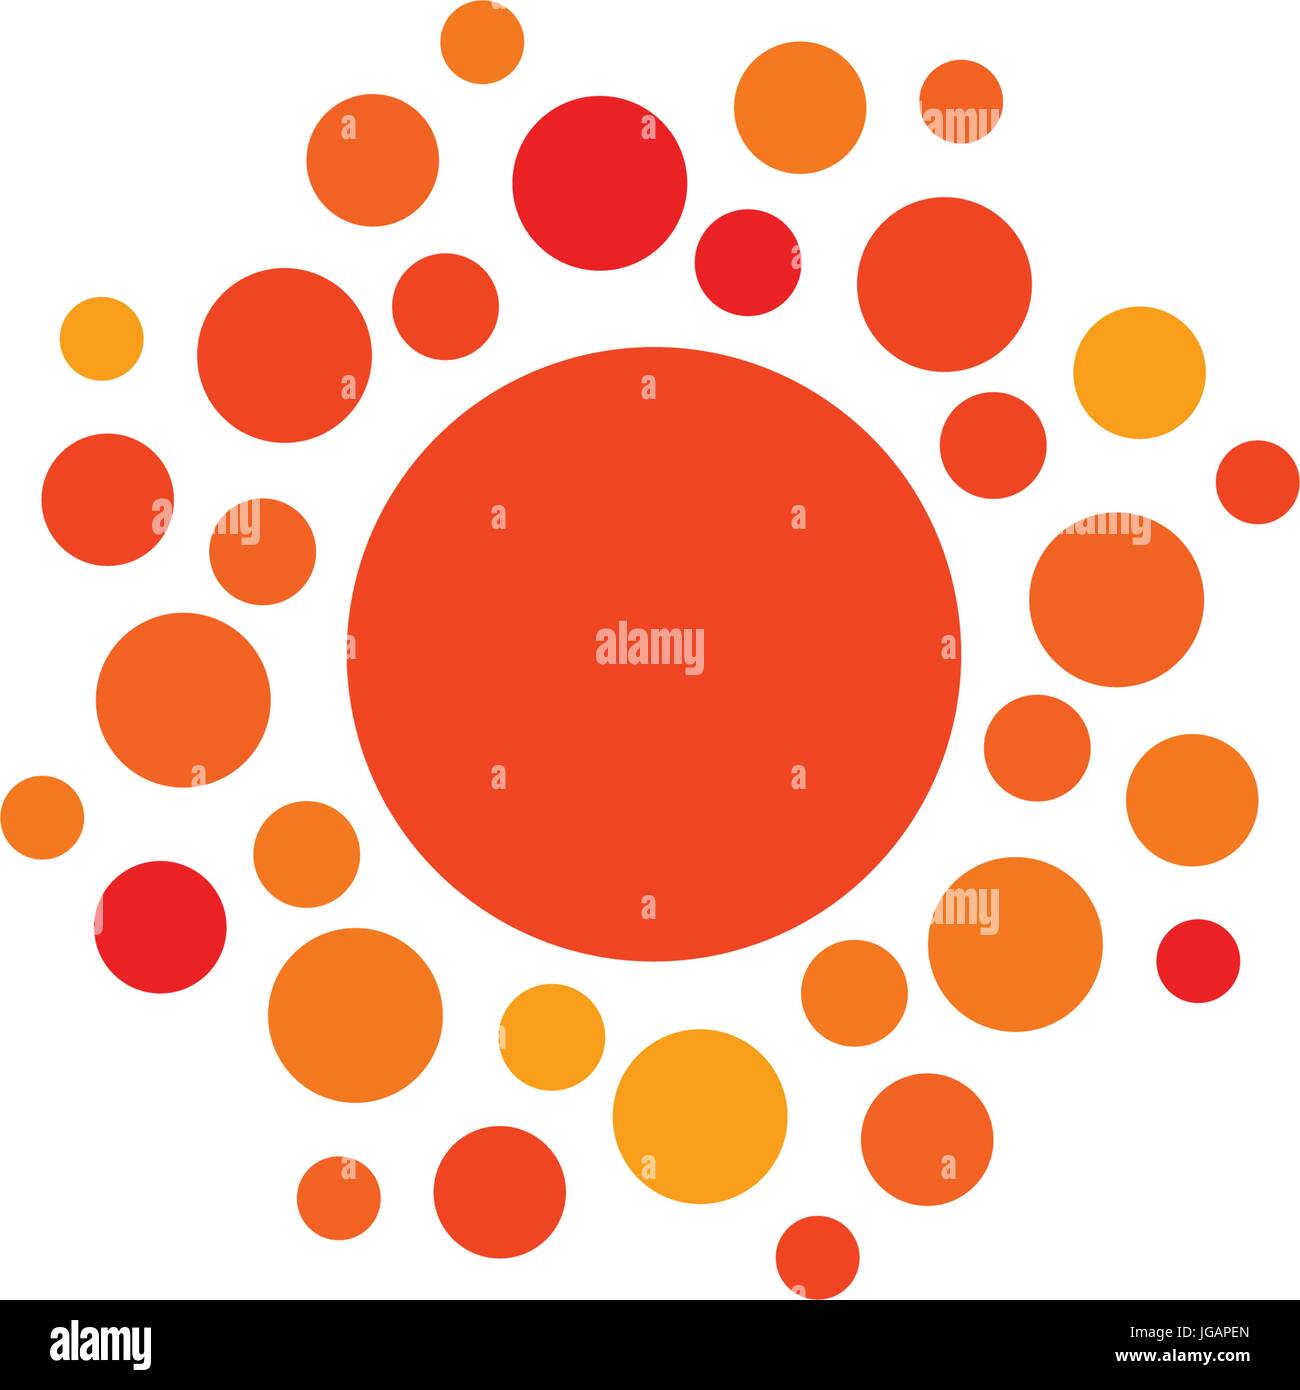 Orange Farbe abstrakte einfache Sonnensymbol. Sonnigen Kreisform abgerundet. Sommer Tag Symbol und Vektor-Logo. Stock Vektor